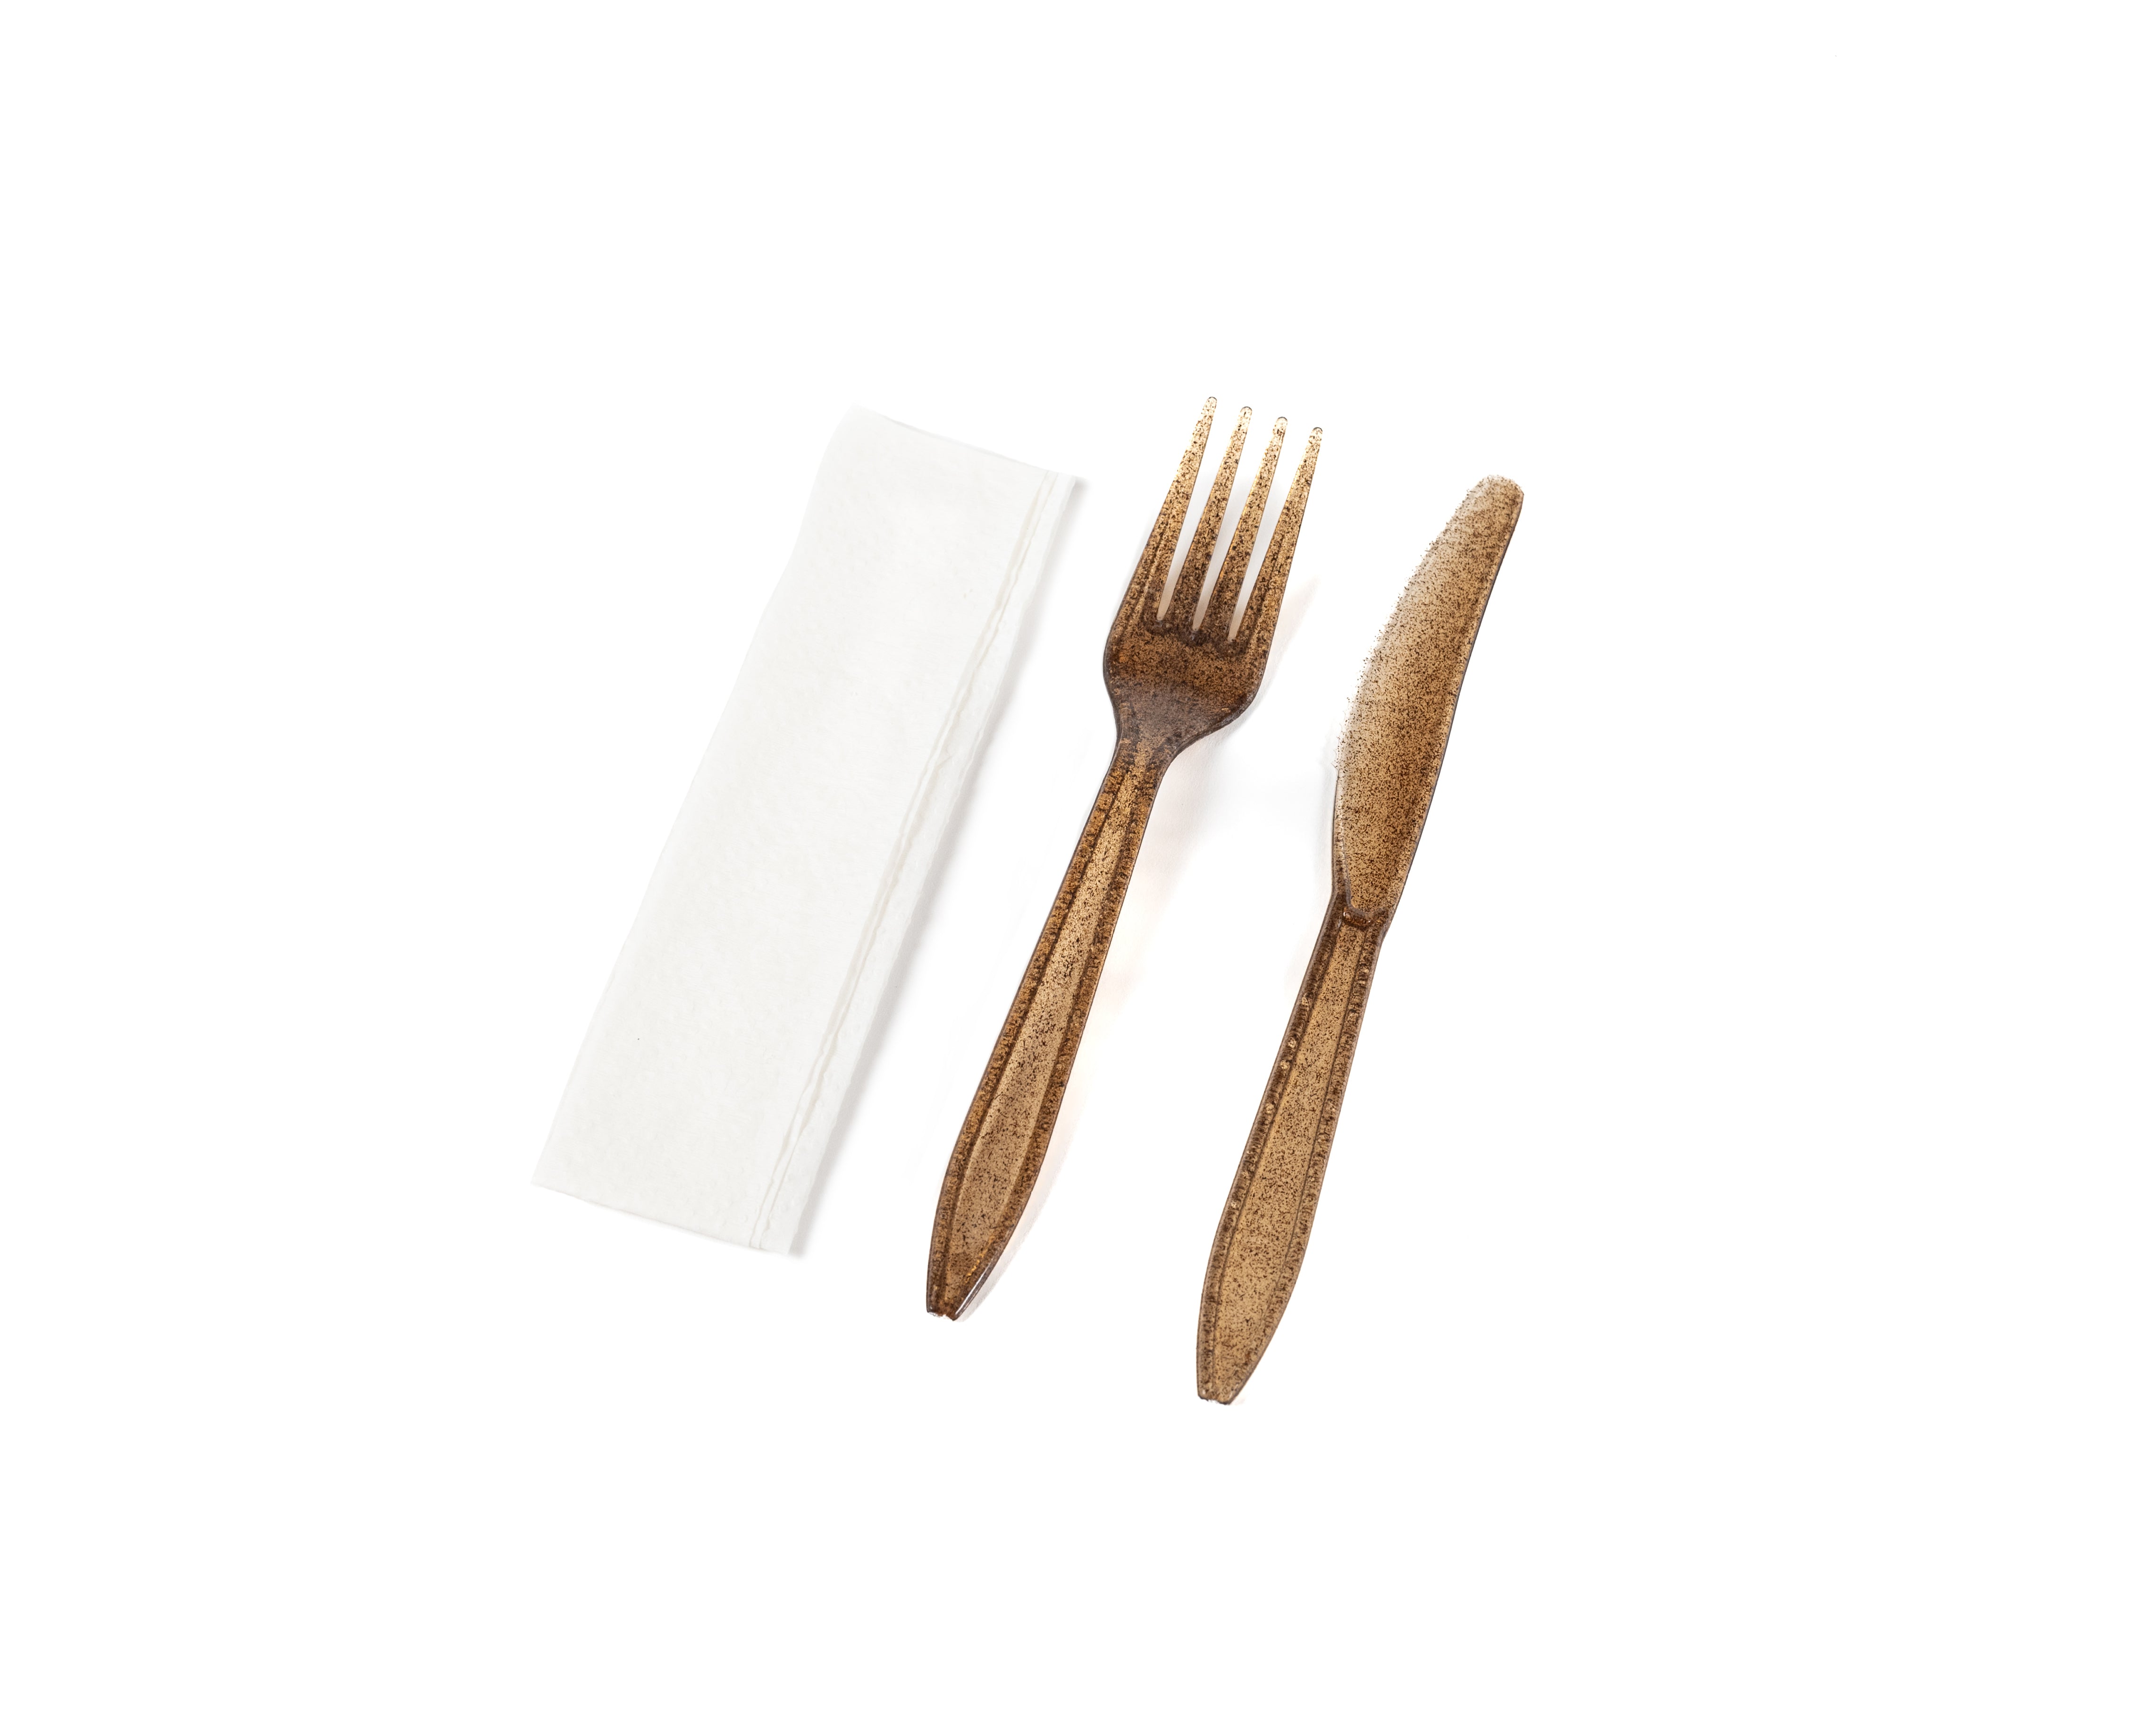 Biodegradable Agave-Based Knife & Fork Kit